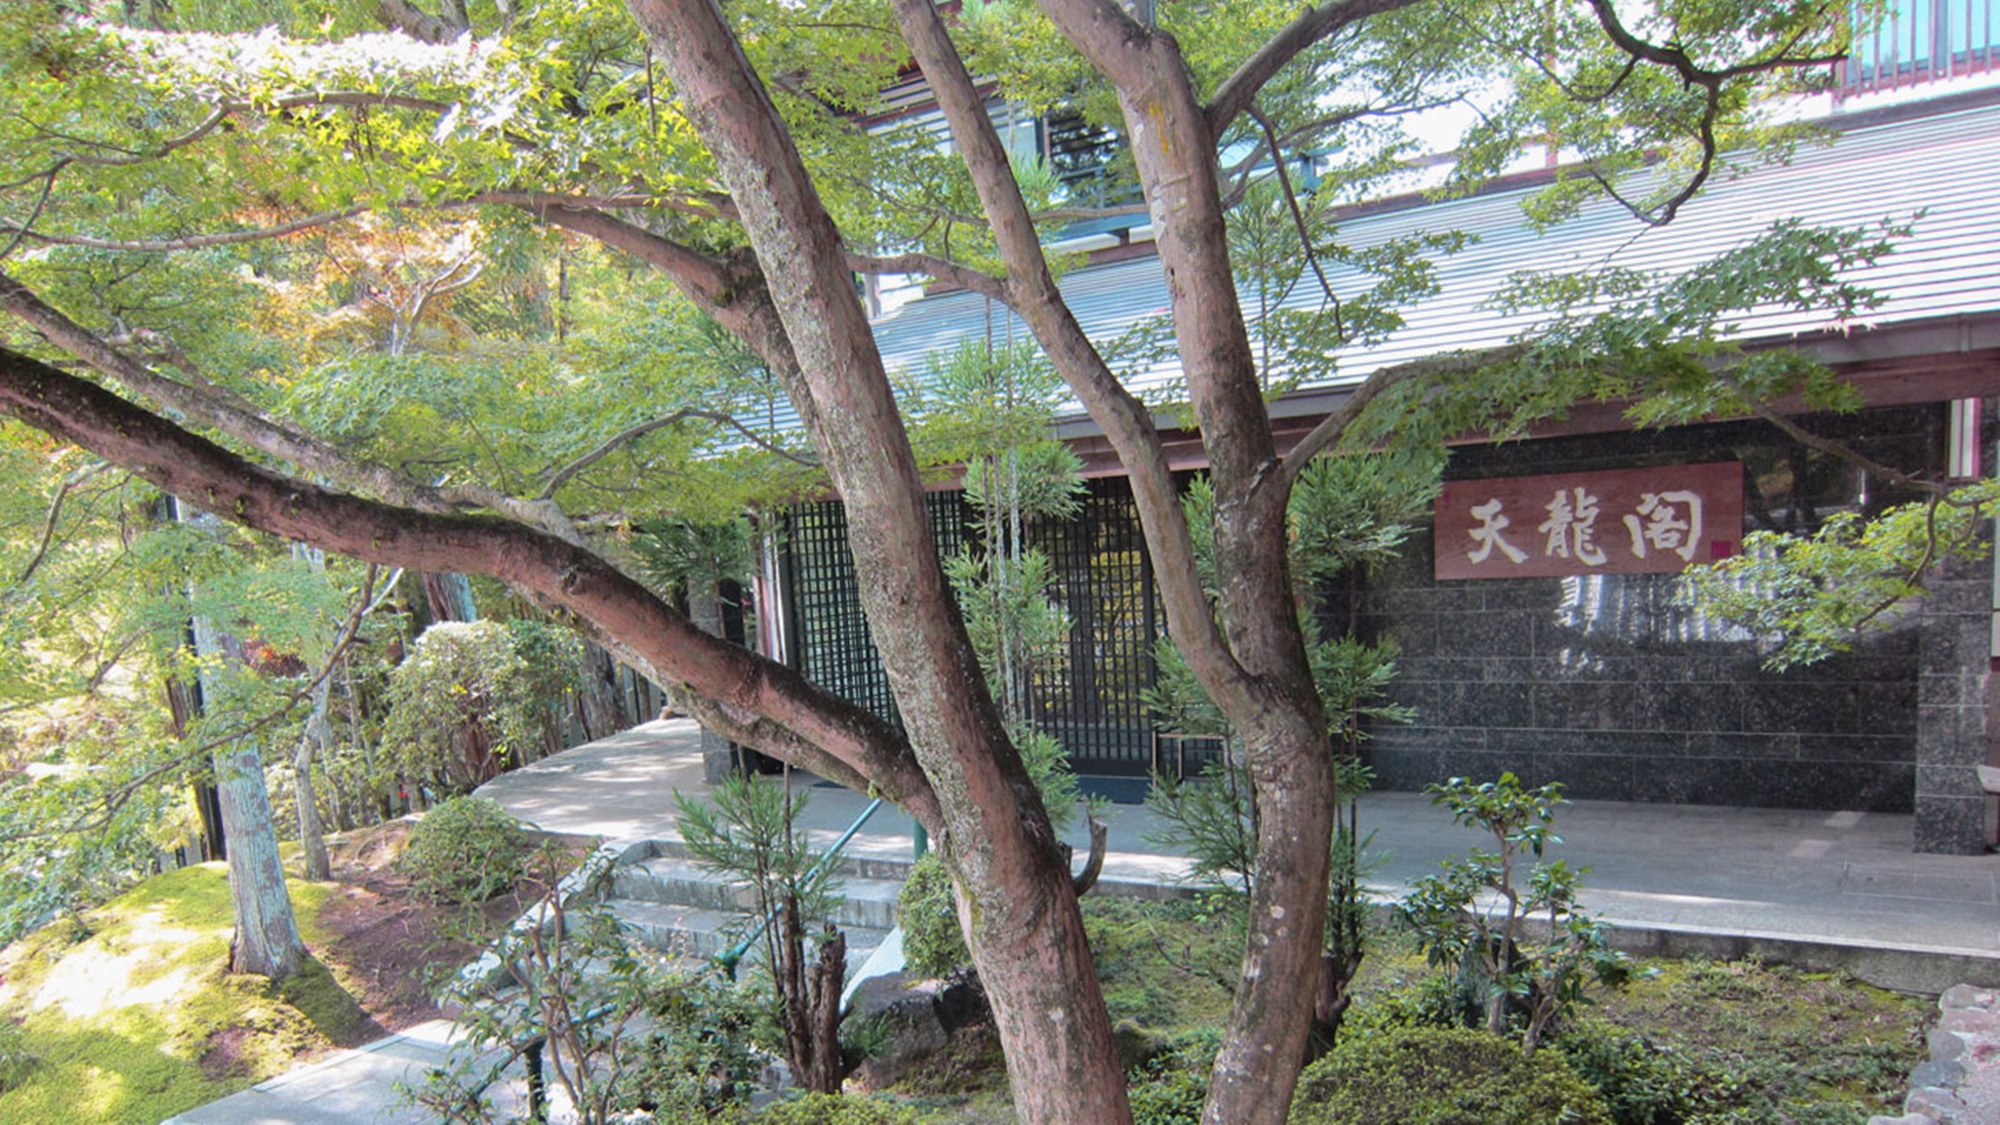 奈良の霊山寺へ写真撮影へ！アクセスが便利なホテルを教えてください